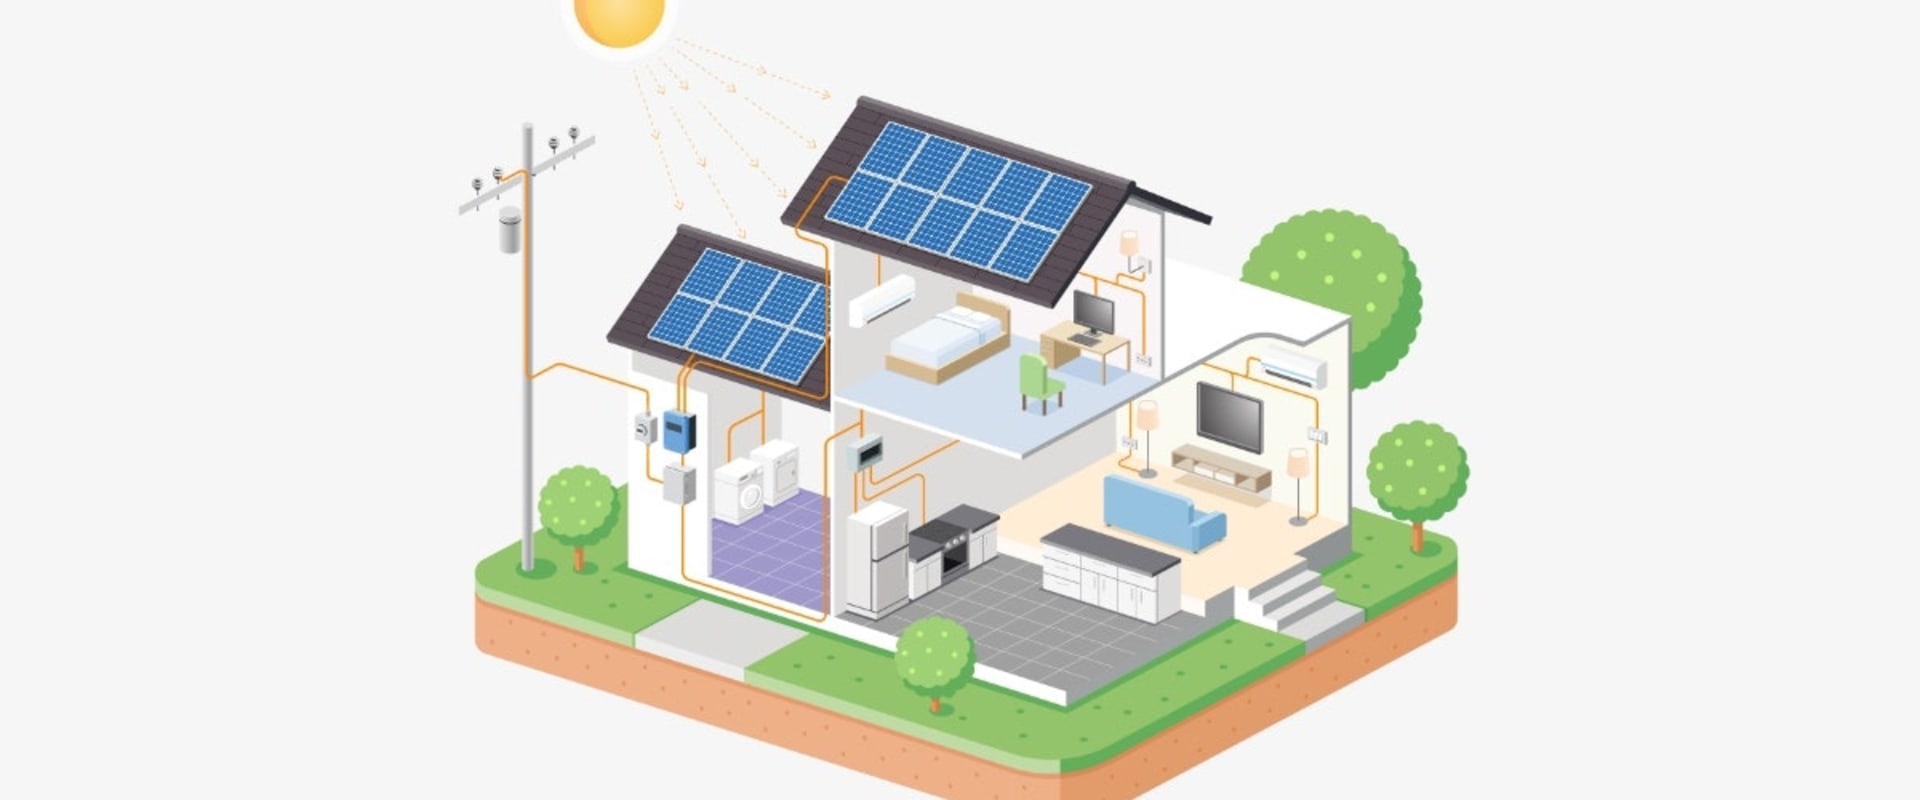 Understanding How Solar Power Works